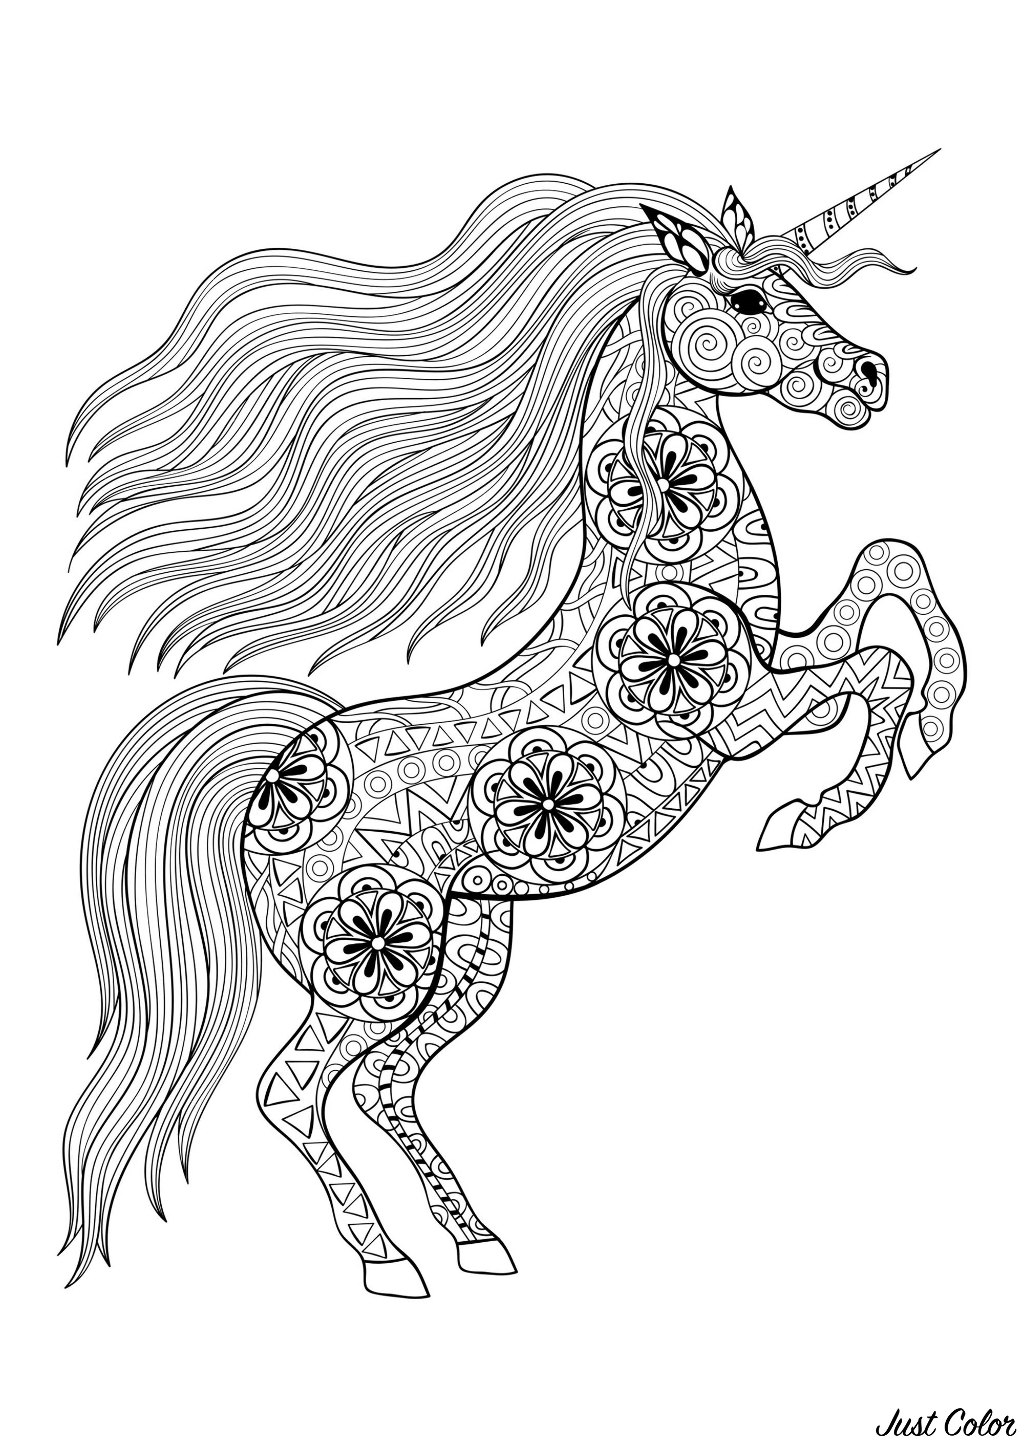 Disegni da colorare per adulti : Unicorni - 4